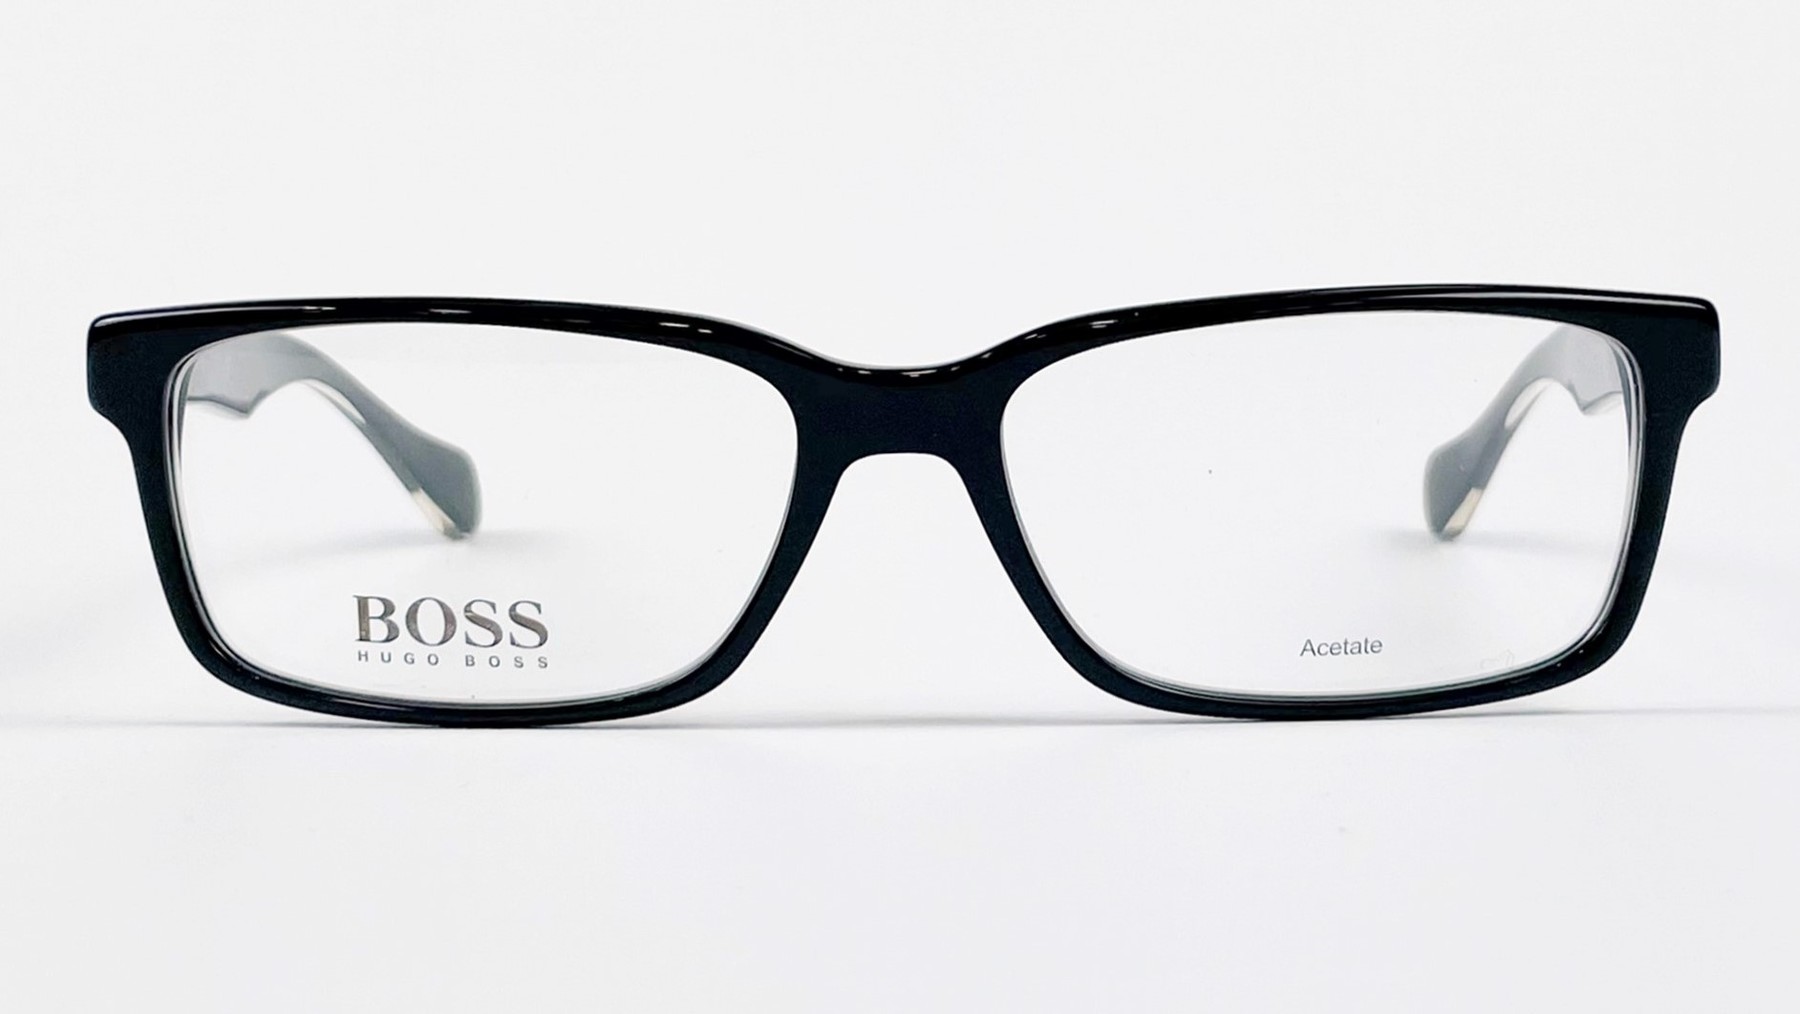 HUGO BOSS 0914 1YS, Korean glasses, sunglasses, eyeglasses, glasses